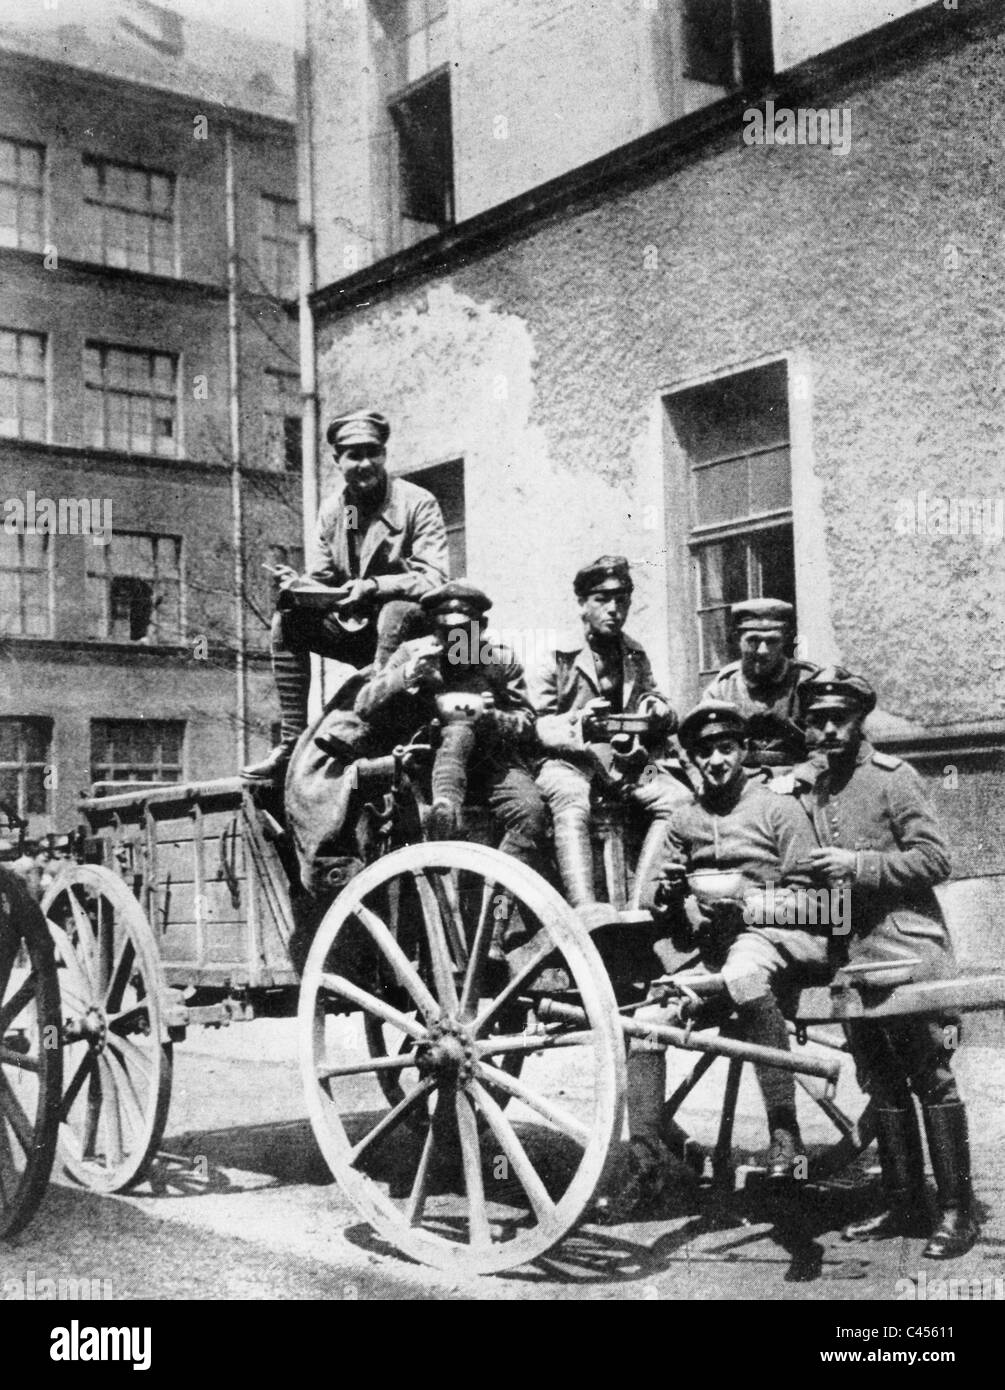 Soldaten der freien Korps Epp in München, darunter Rudolf Hess, 1919 Stockfoto